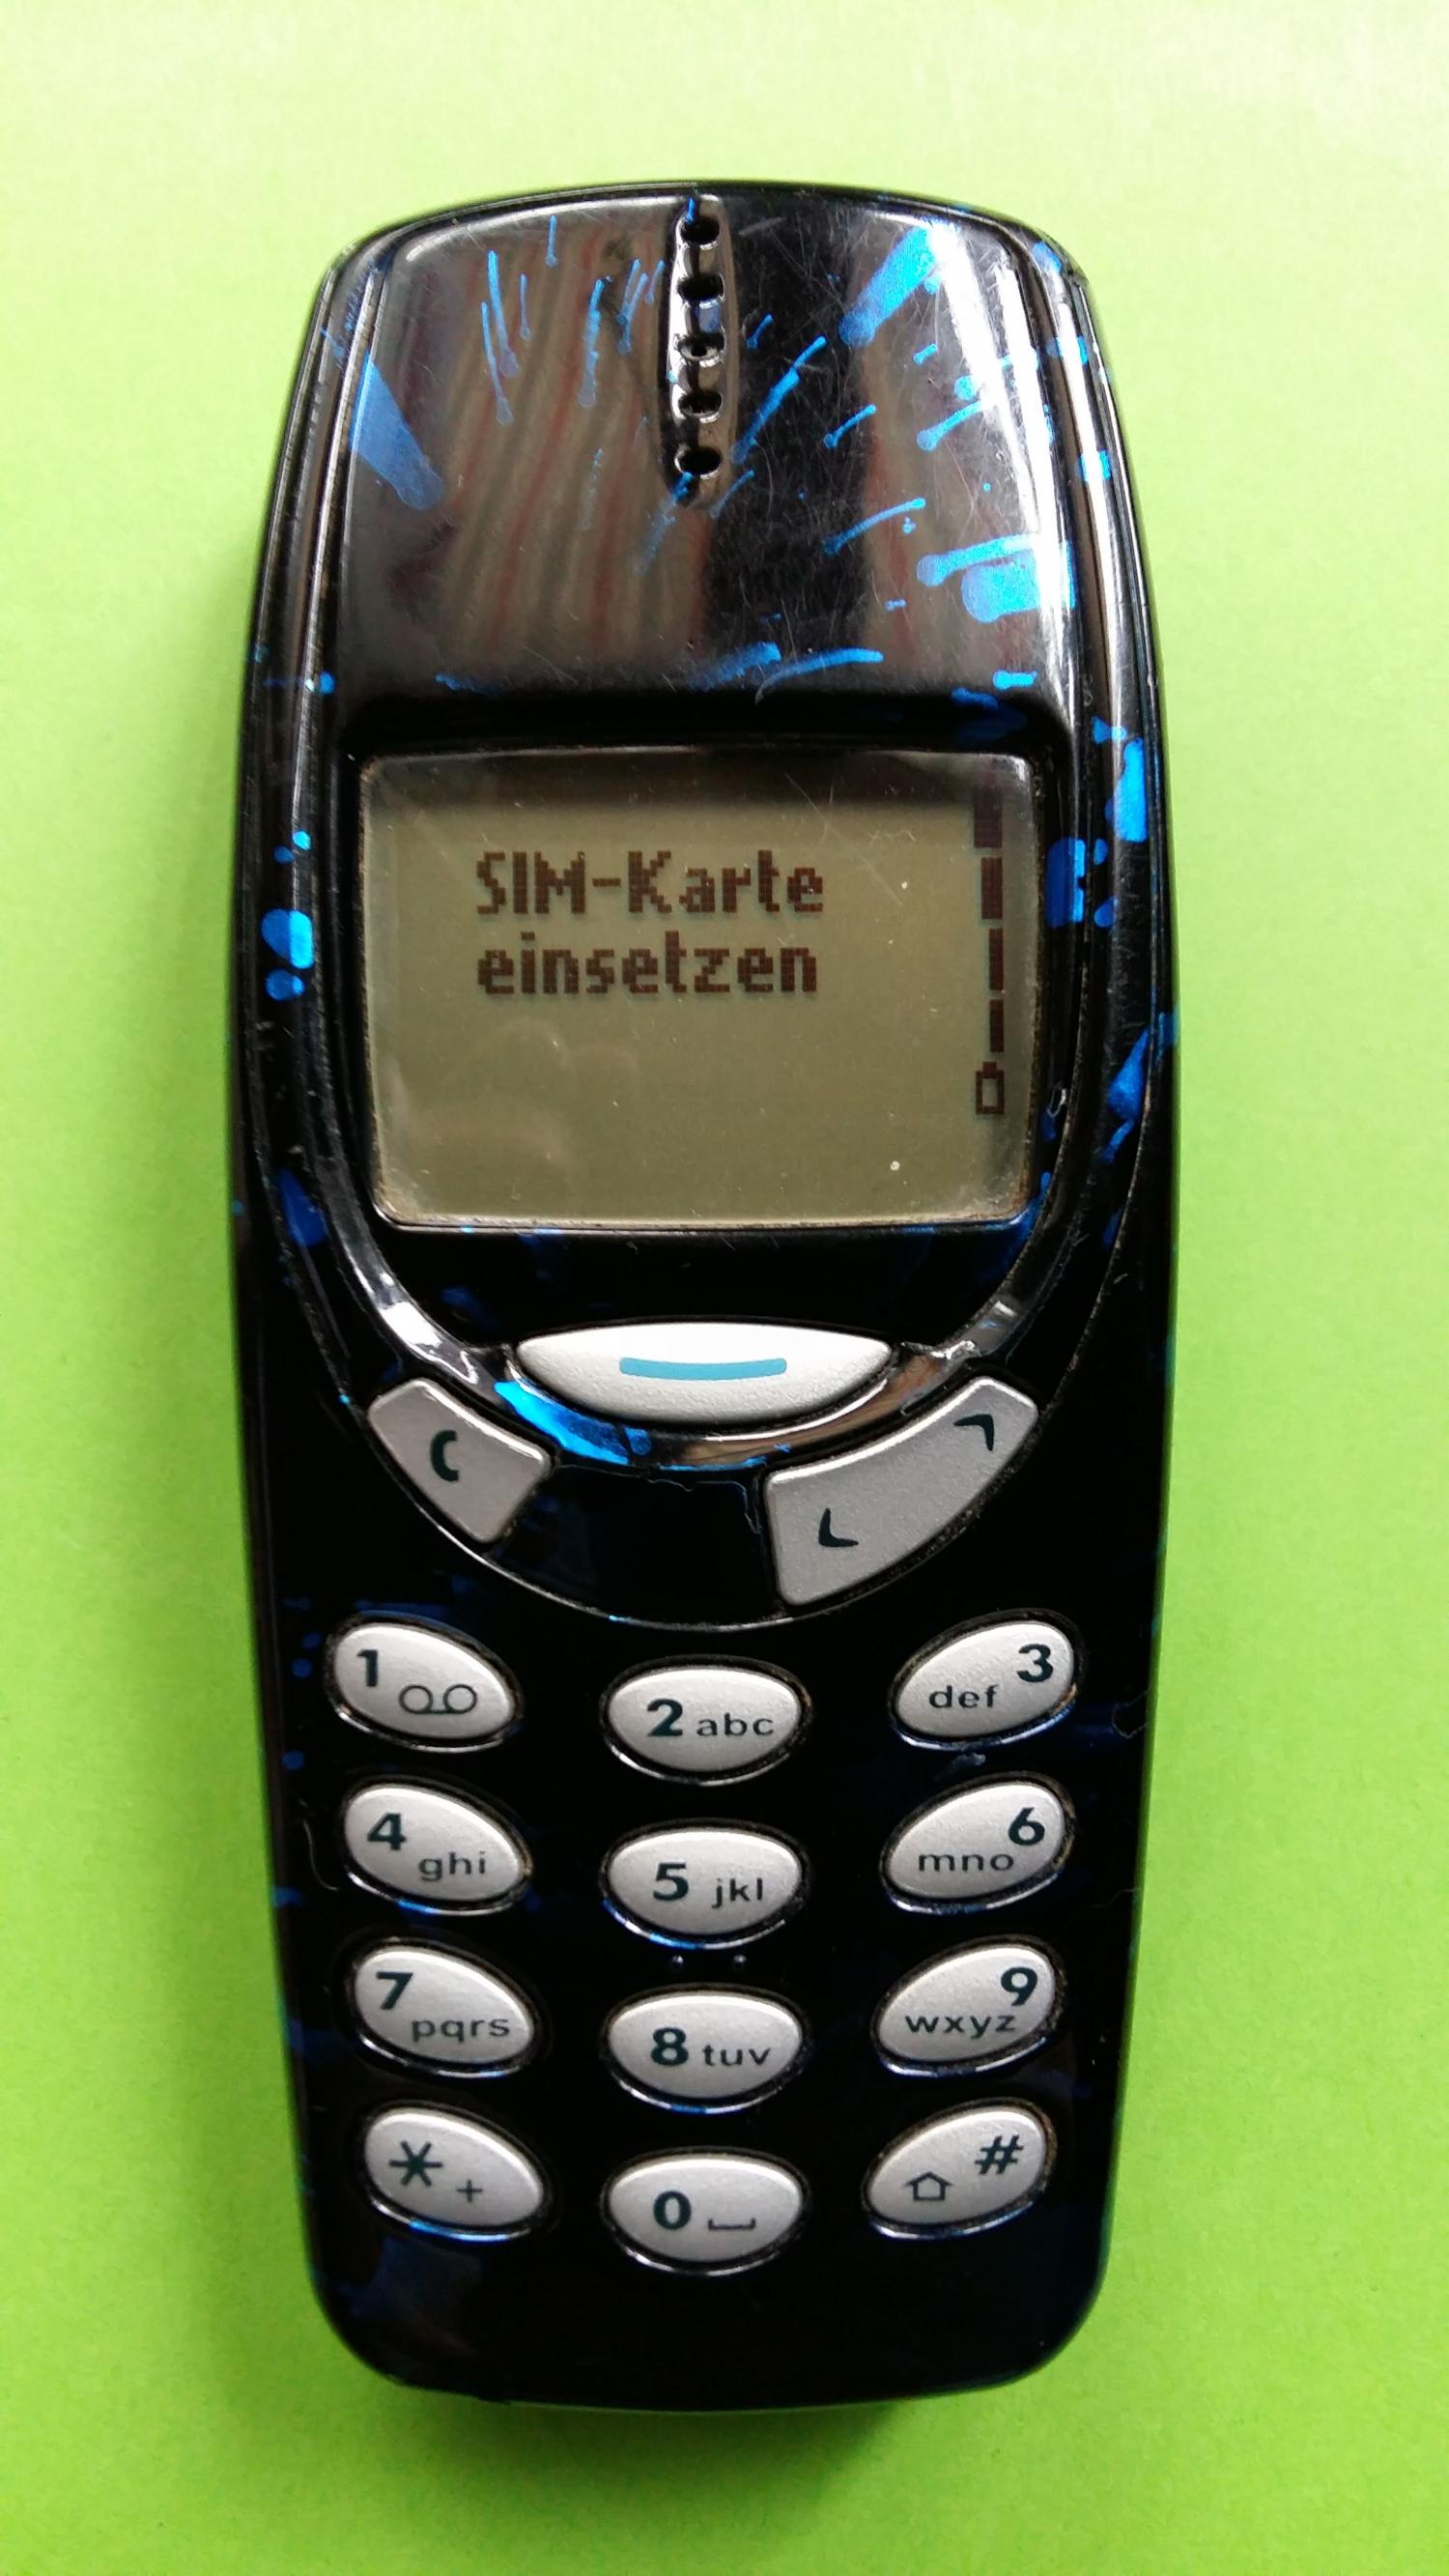 image-7306892-Nokia 3310 (14)1.jpg